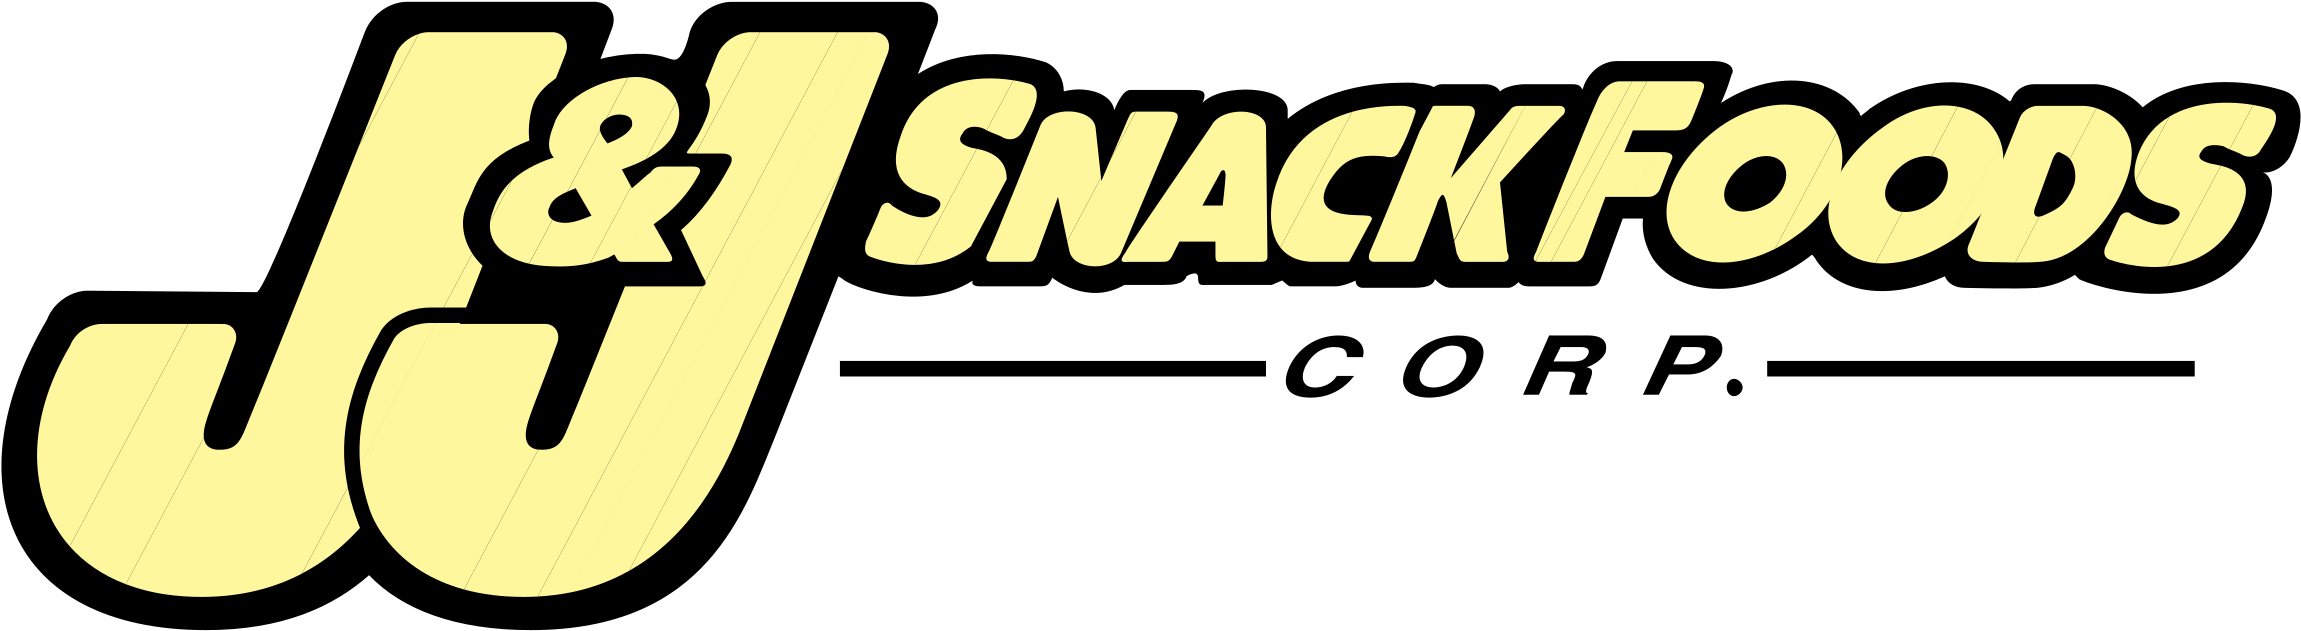 J&j Snack Foods Logo Png Transparent - J&j Snack Foods Logo Clipart (2400x2400), Png Download